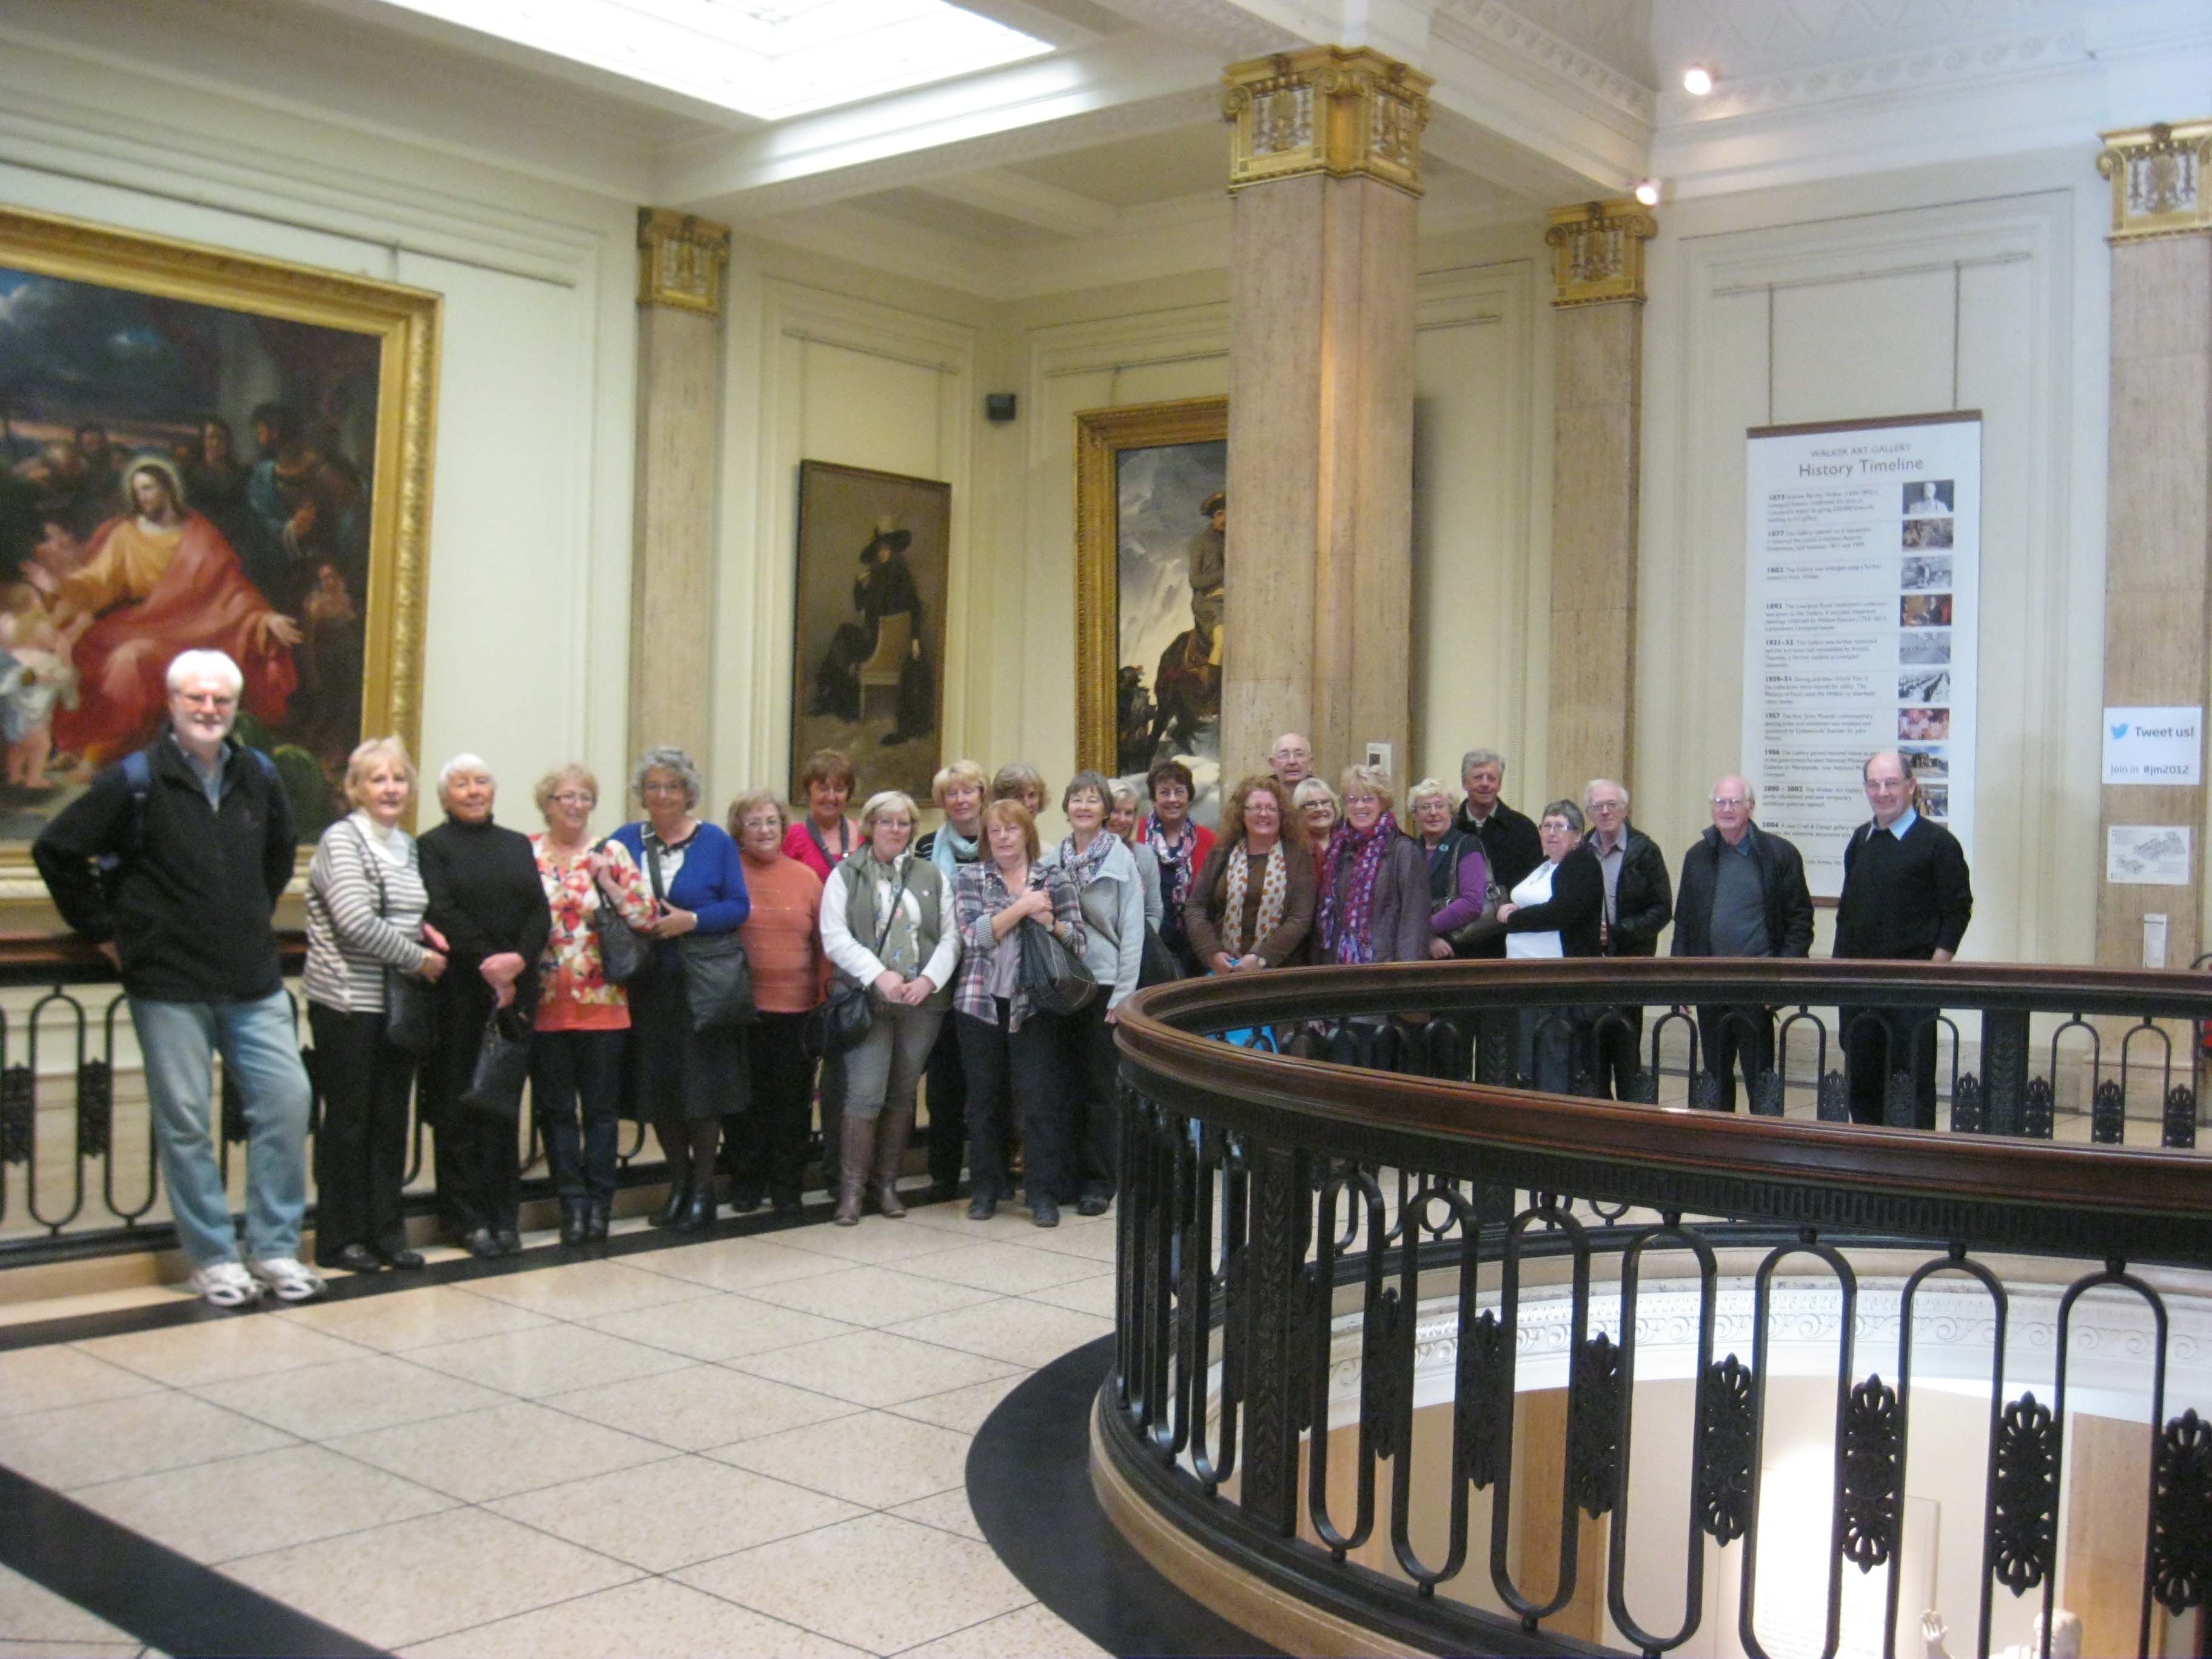 seafton art group members at the Walker art gallery, liverpool